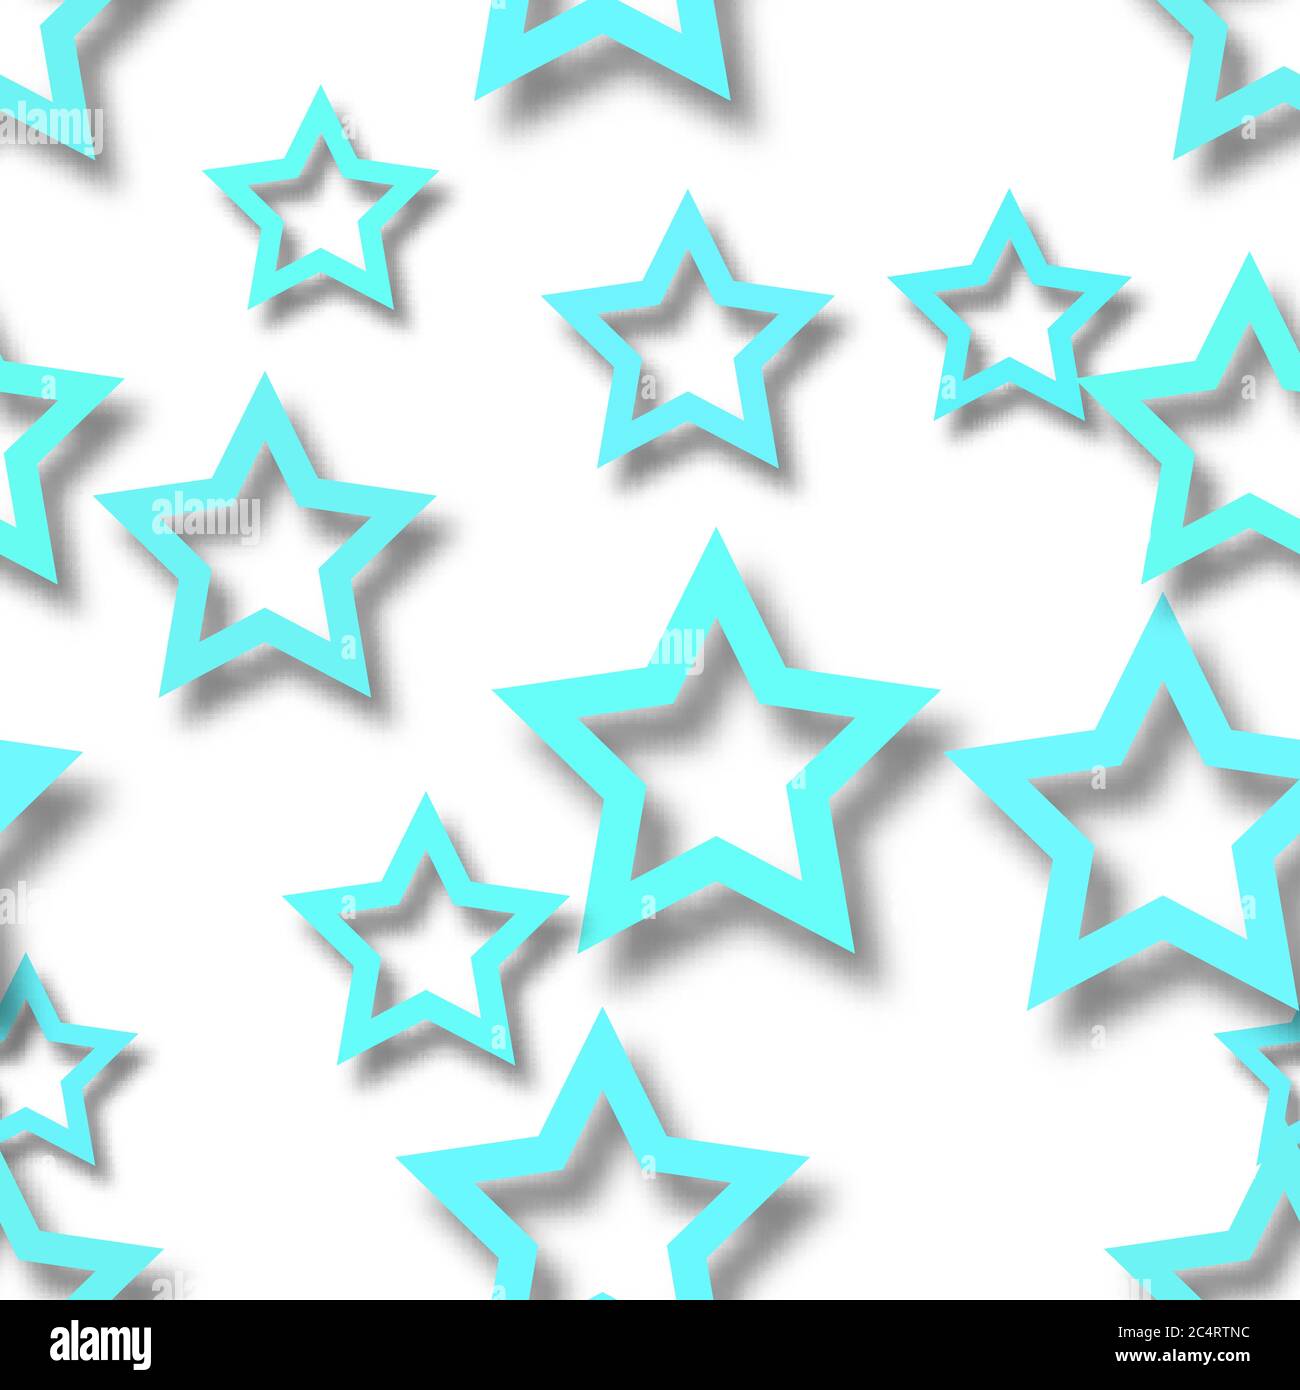 Motif abstrait sans couture d'étoiles bleu clair disposées aléatoirement avec des ombres douces sur fond blanc Illustration de Vecteur